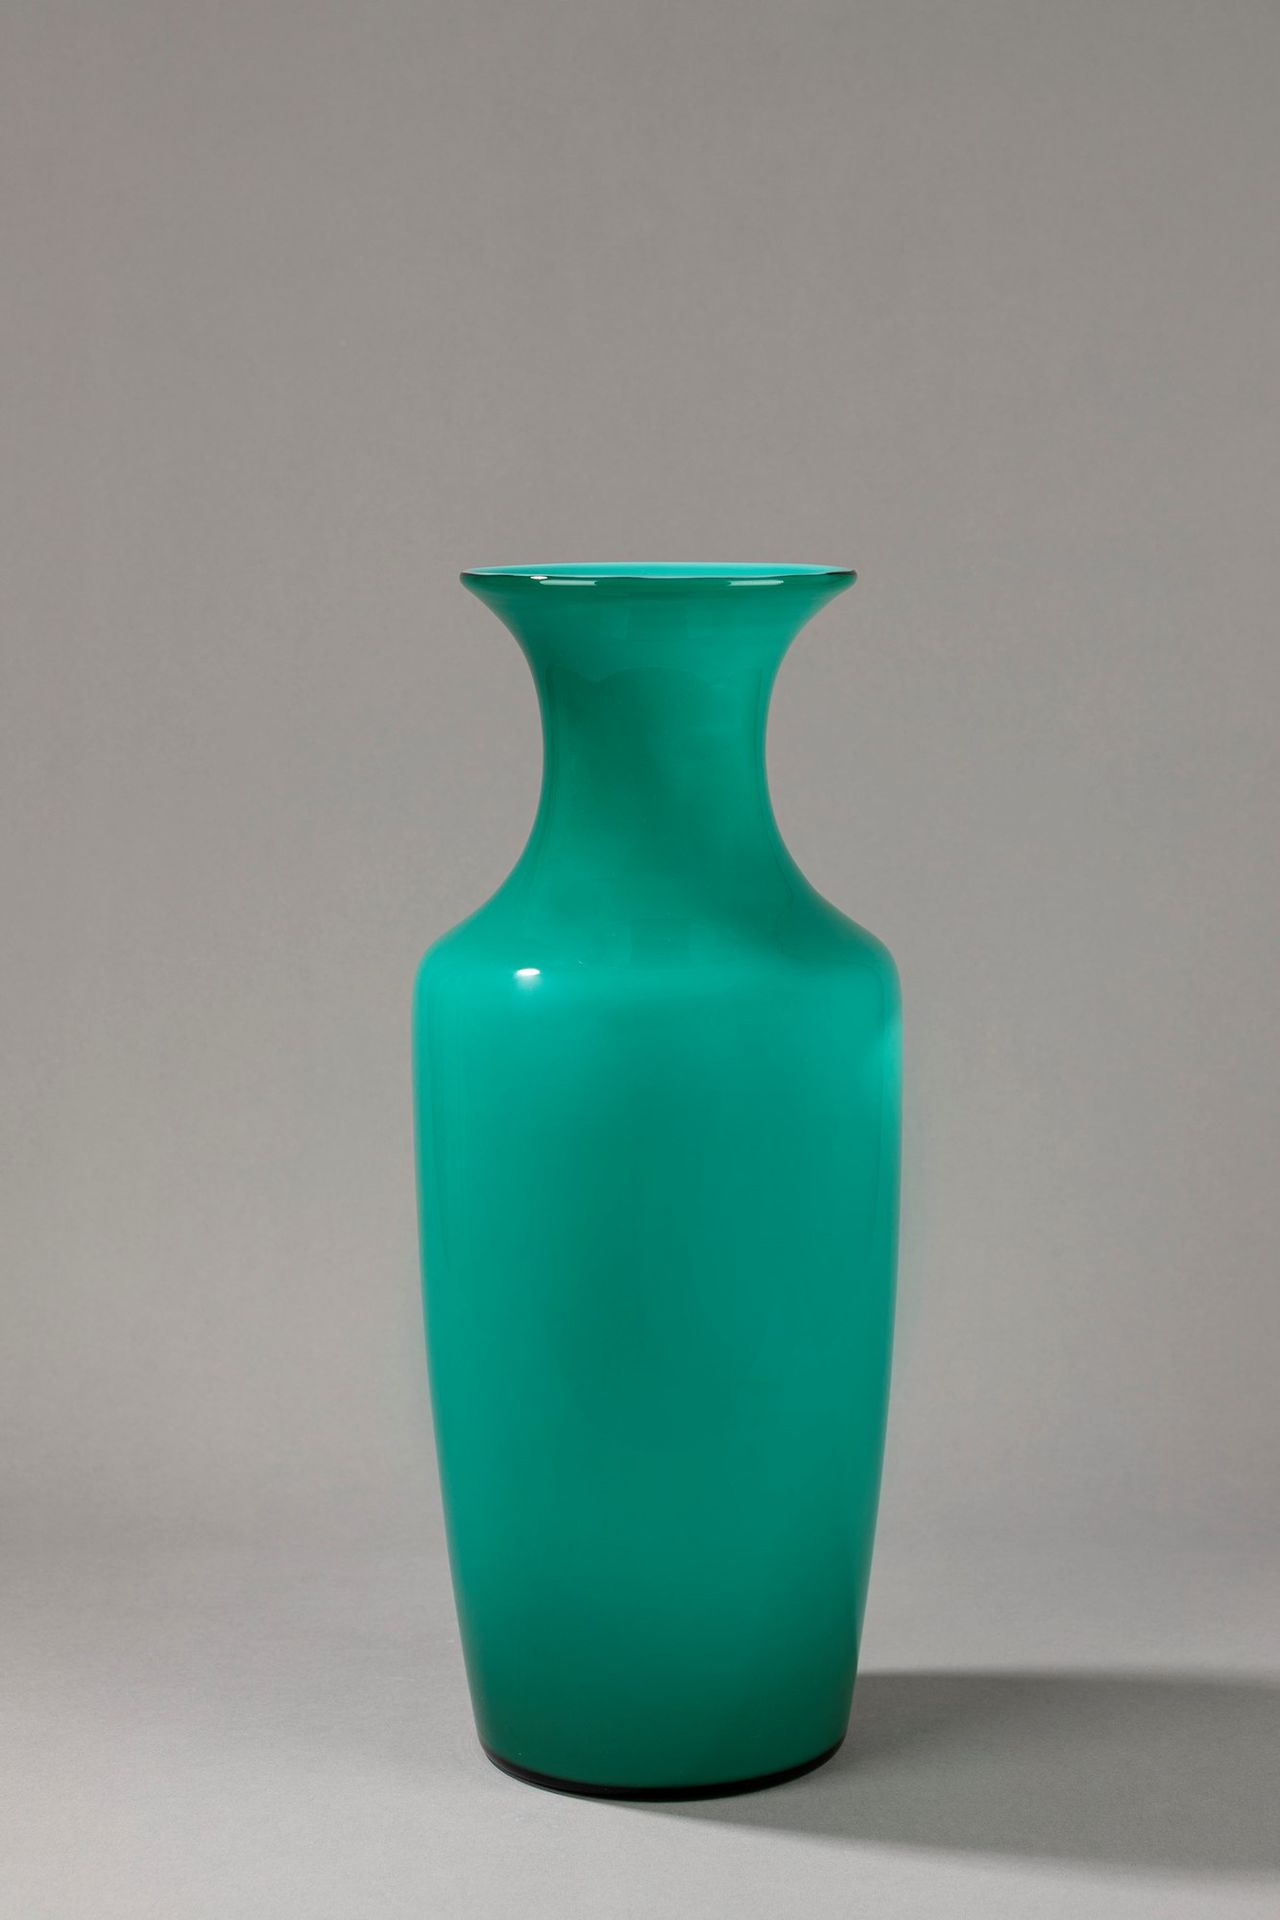 VENINI Vase, 1950 ca.

H cm 43
incamiciato glass.

Acyd sign.

Original label.